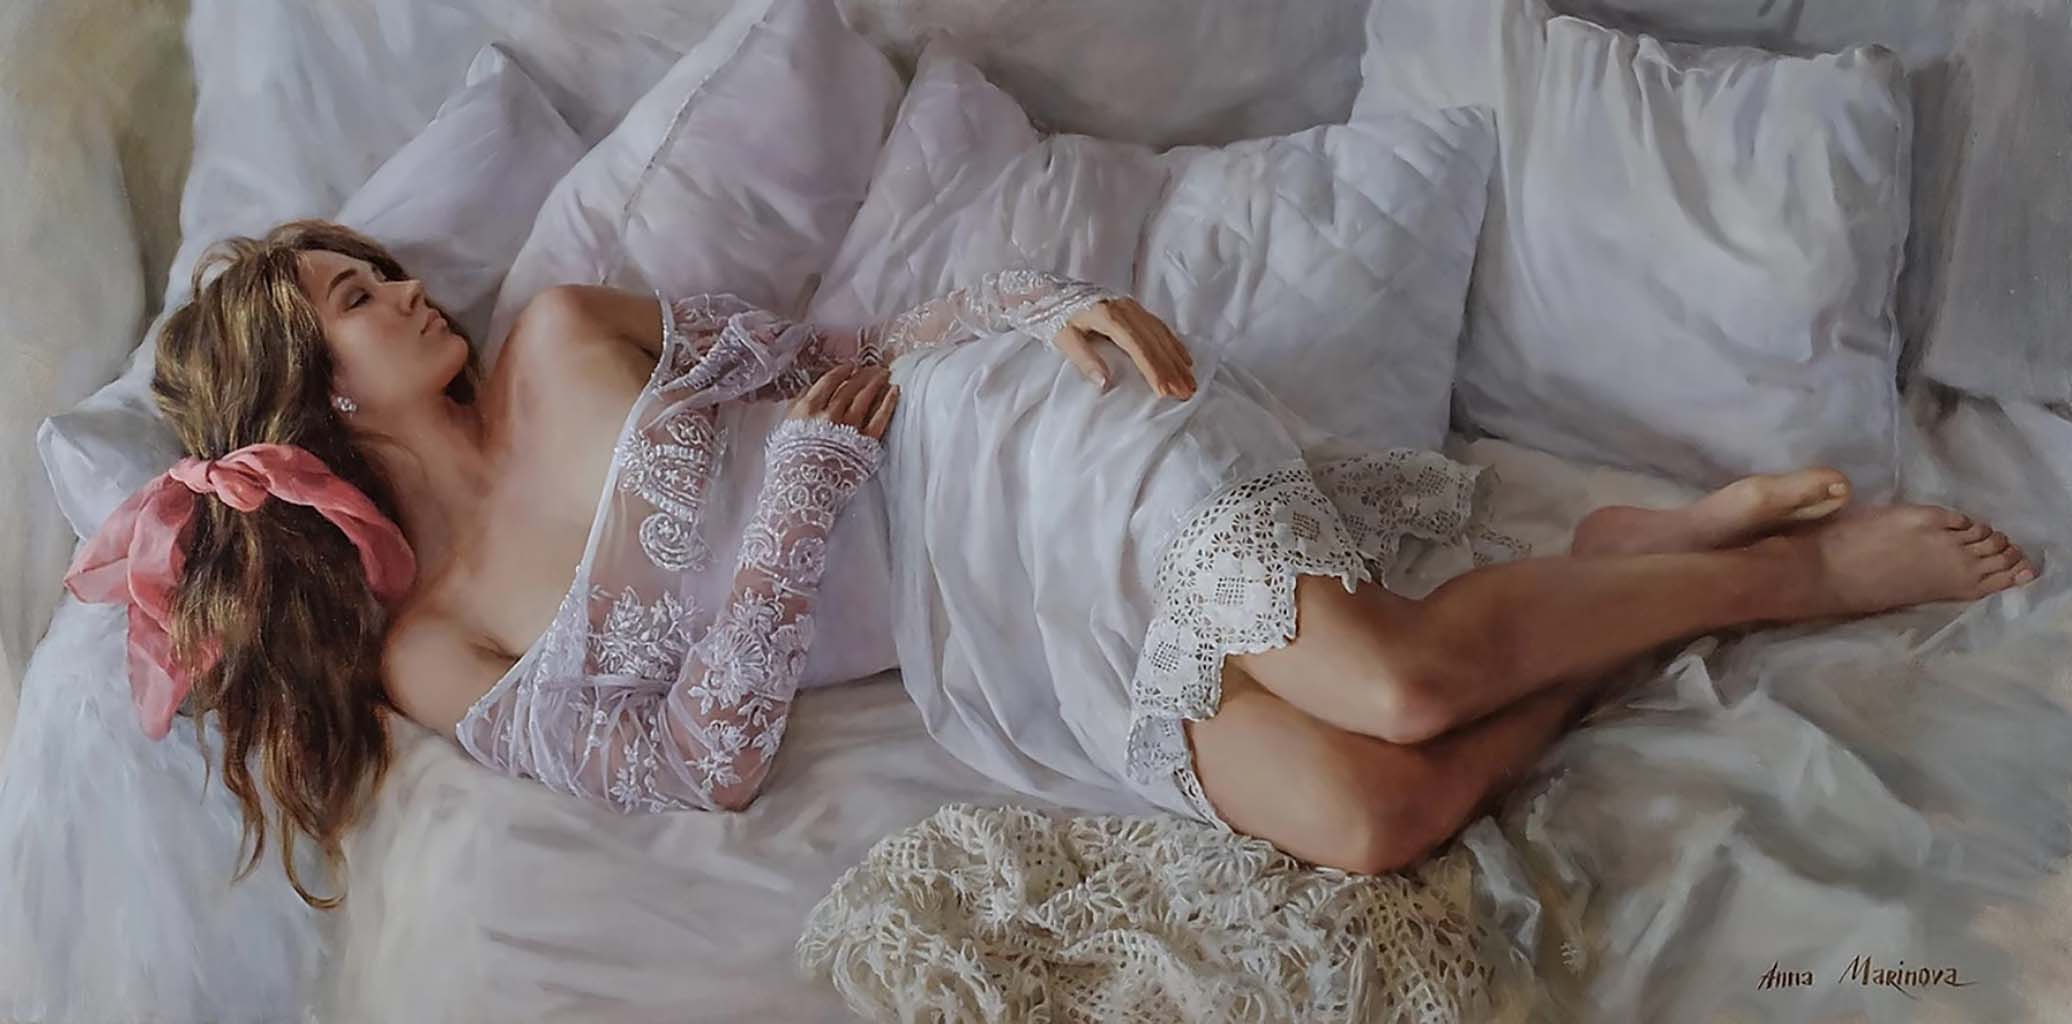 Анна Маринова (Anna Marinova) “Белое кружево | White lace“